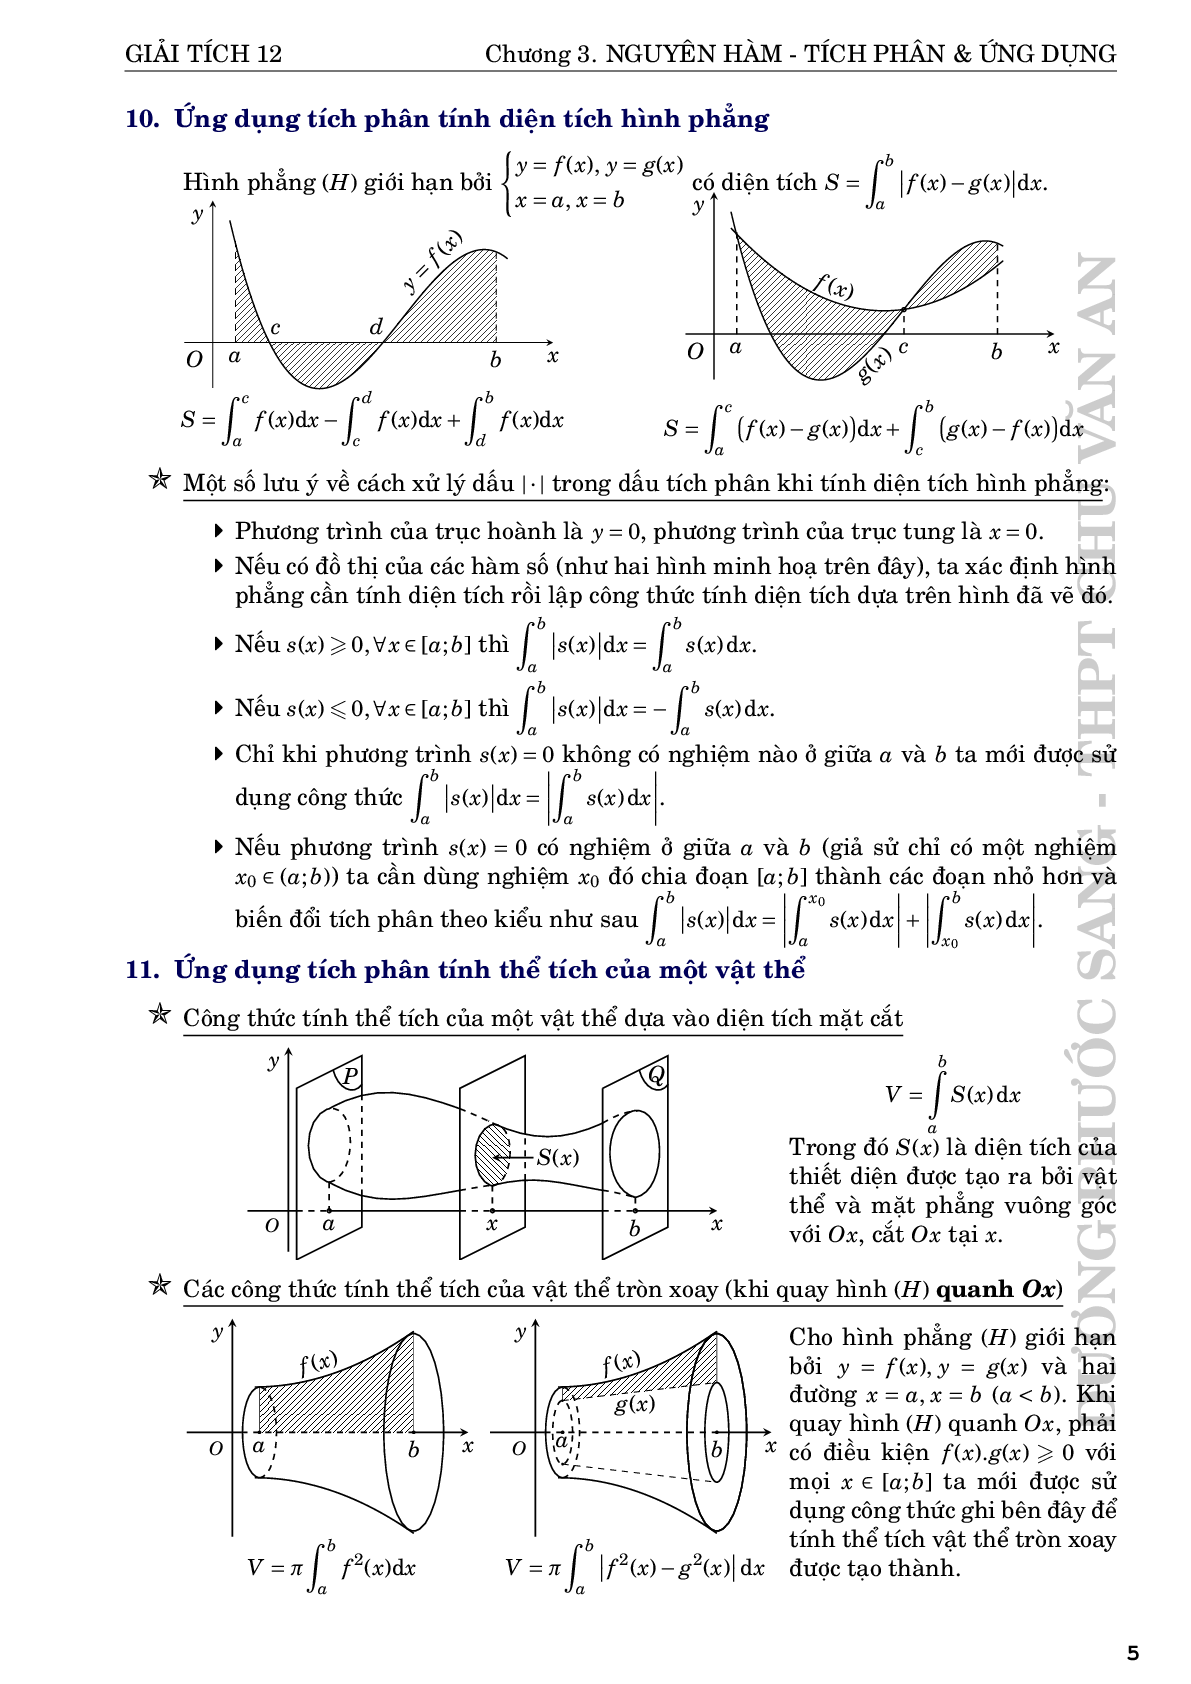 Nguyên hàm tích phân và ứng dụng - Dương Phước Sang (trang 5)